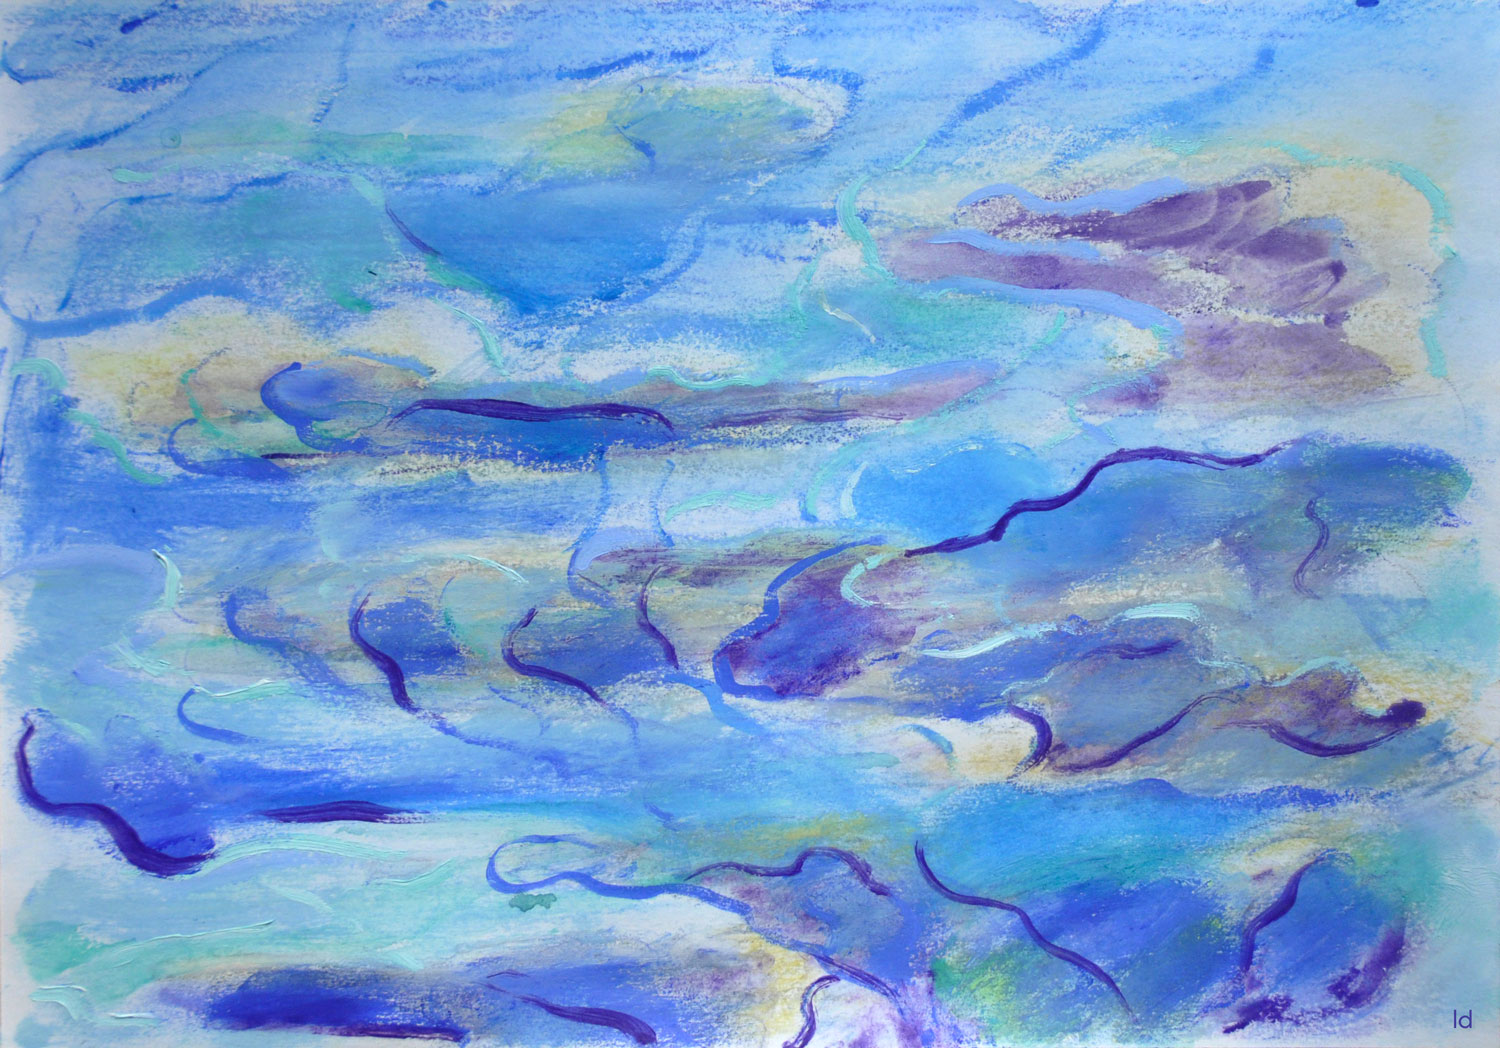 Etude de nuages, 2. Crayon de couleur, pastel tendre et huile sur papier, 21x29, 2021